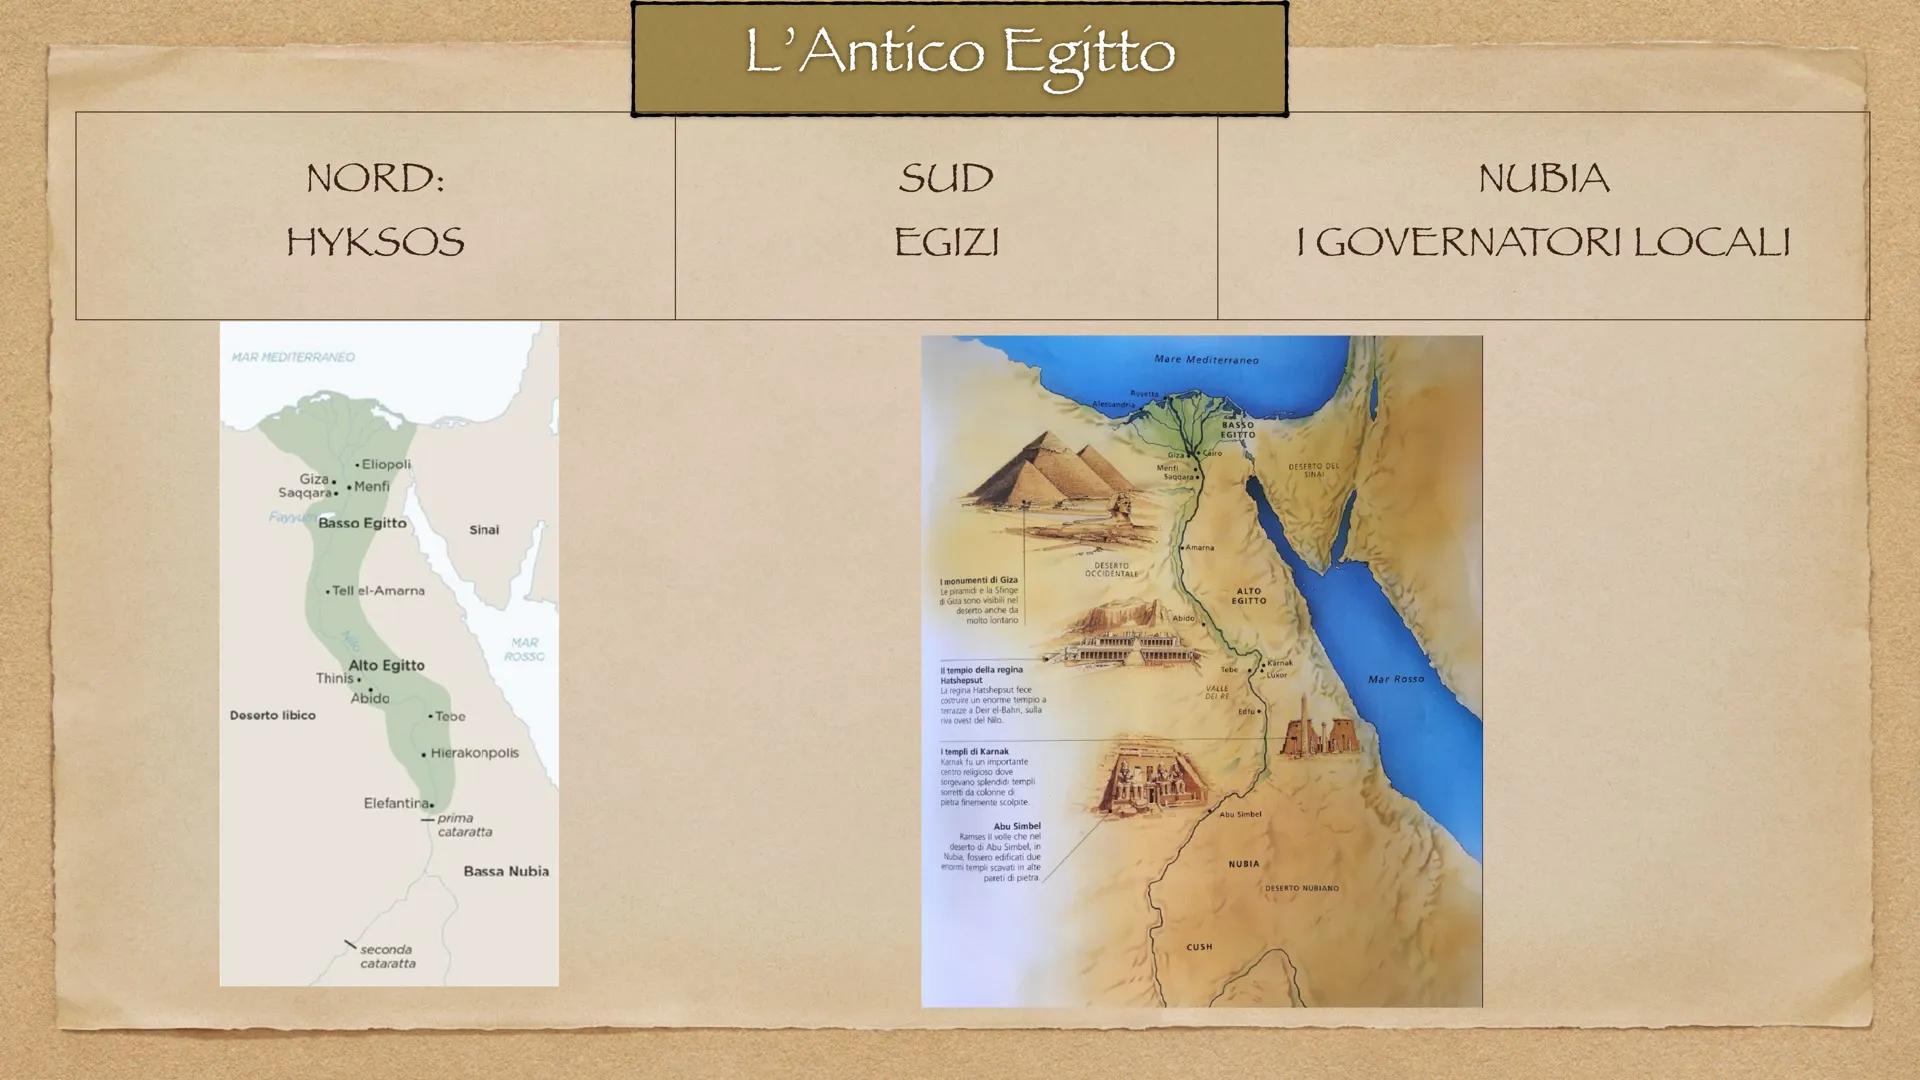 L'Antico Egitto
Egitto: il "dono del Nilo"
3100-1070 a.C. Il Nilo
Mediterranean Sea
EGYPT
SUDAN
SOUTH
SUDAN
ләмгы дүү
nine Nile R
UGANDA
Red